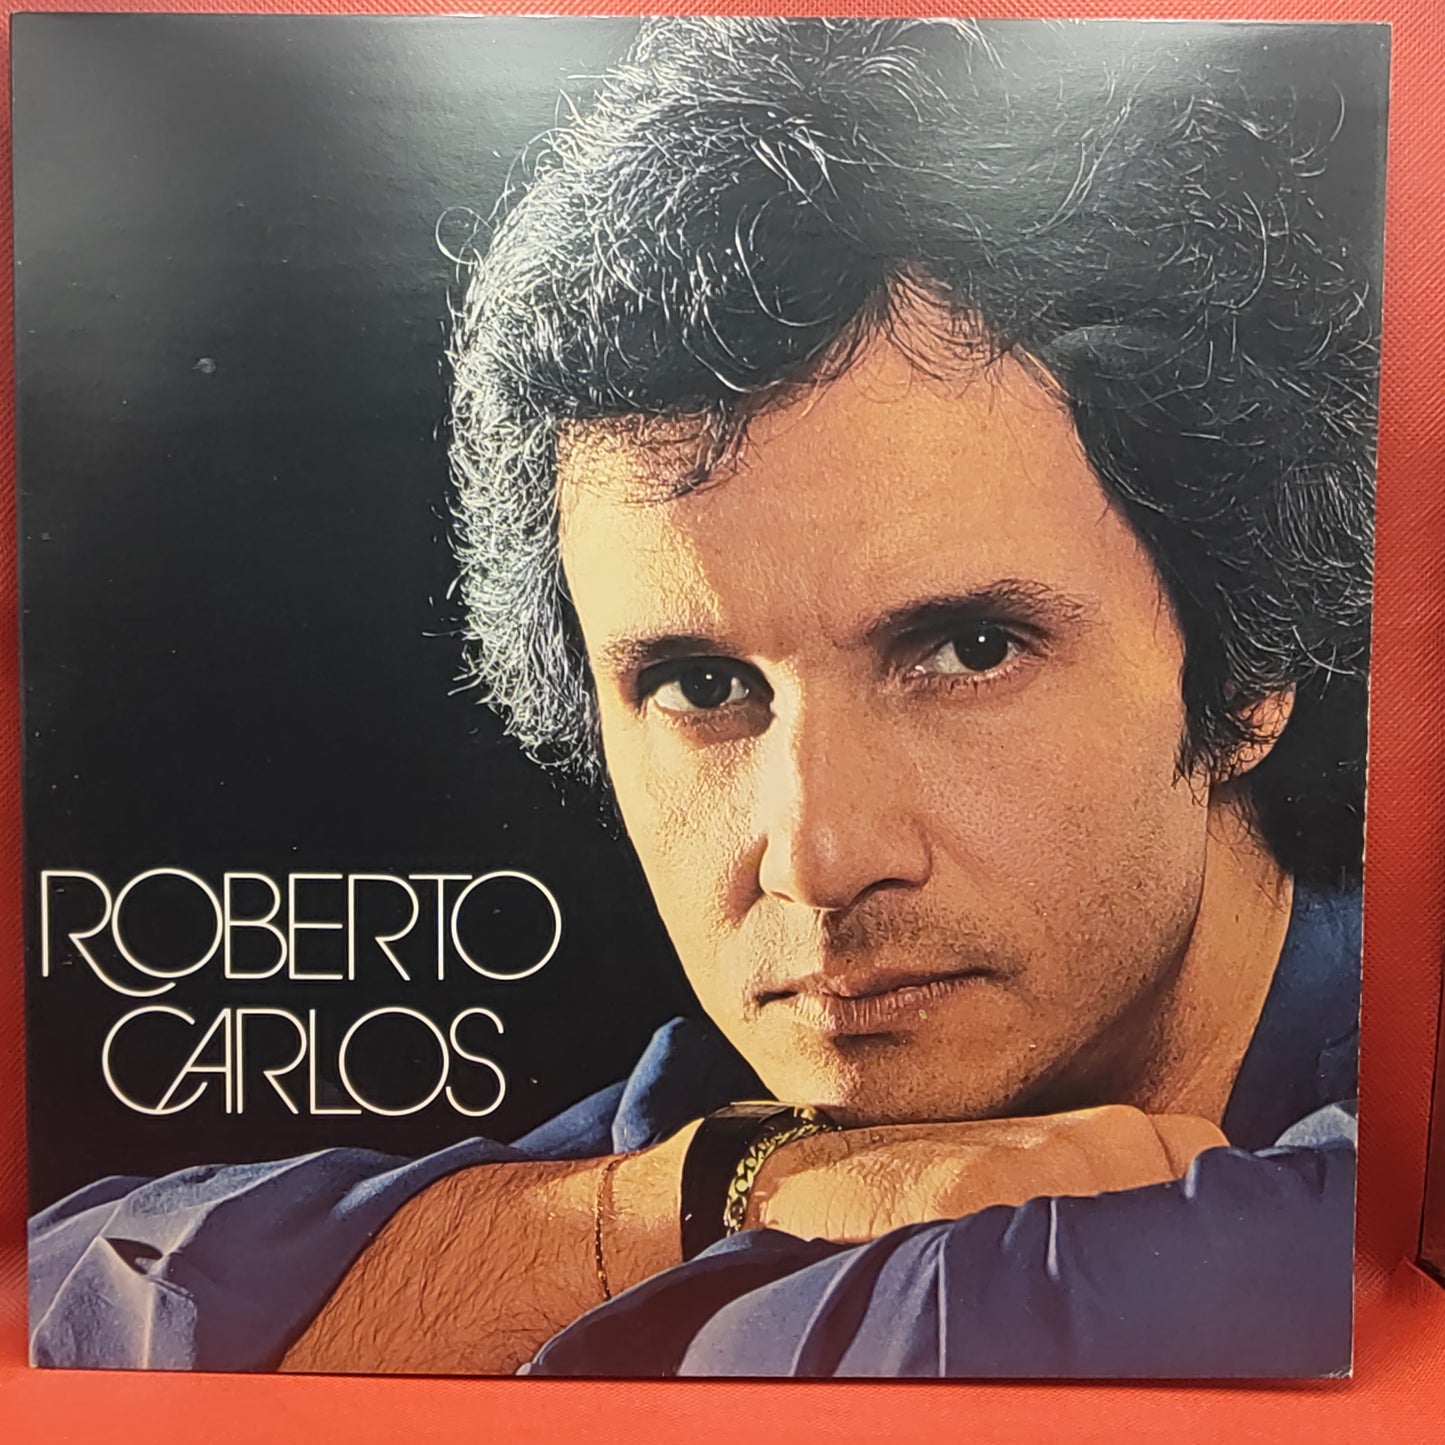 Roberto Carlos – Meu Querido, Meu Velho, Meu Amigo